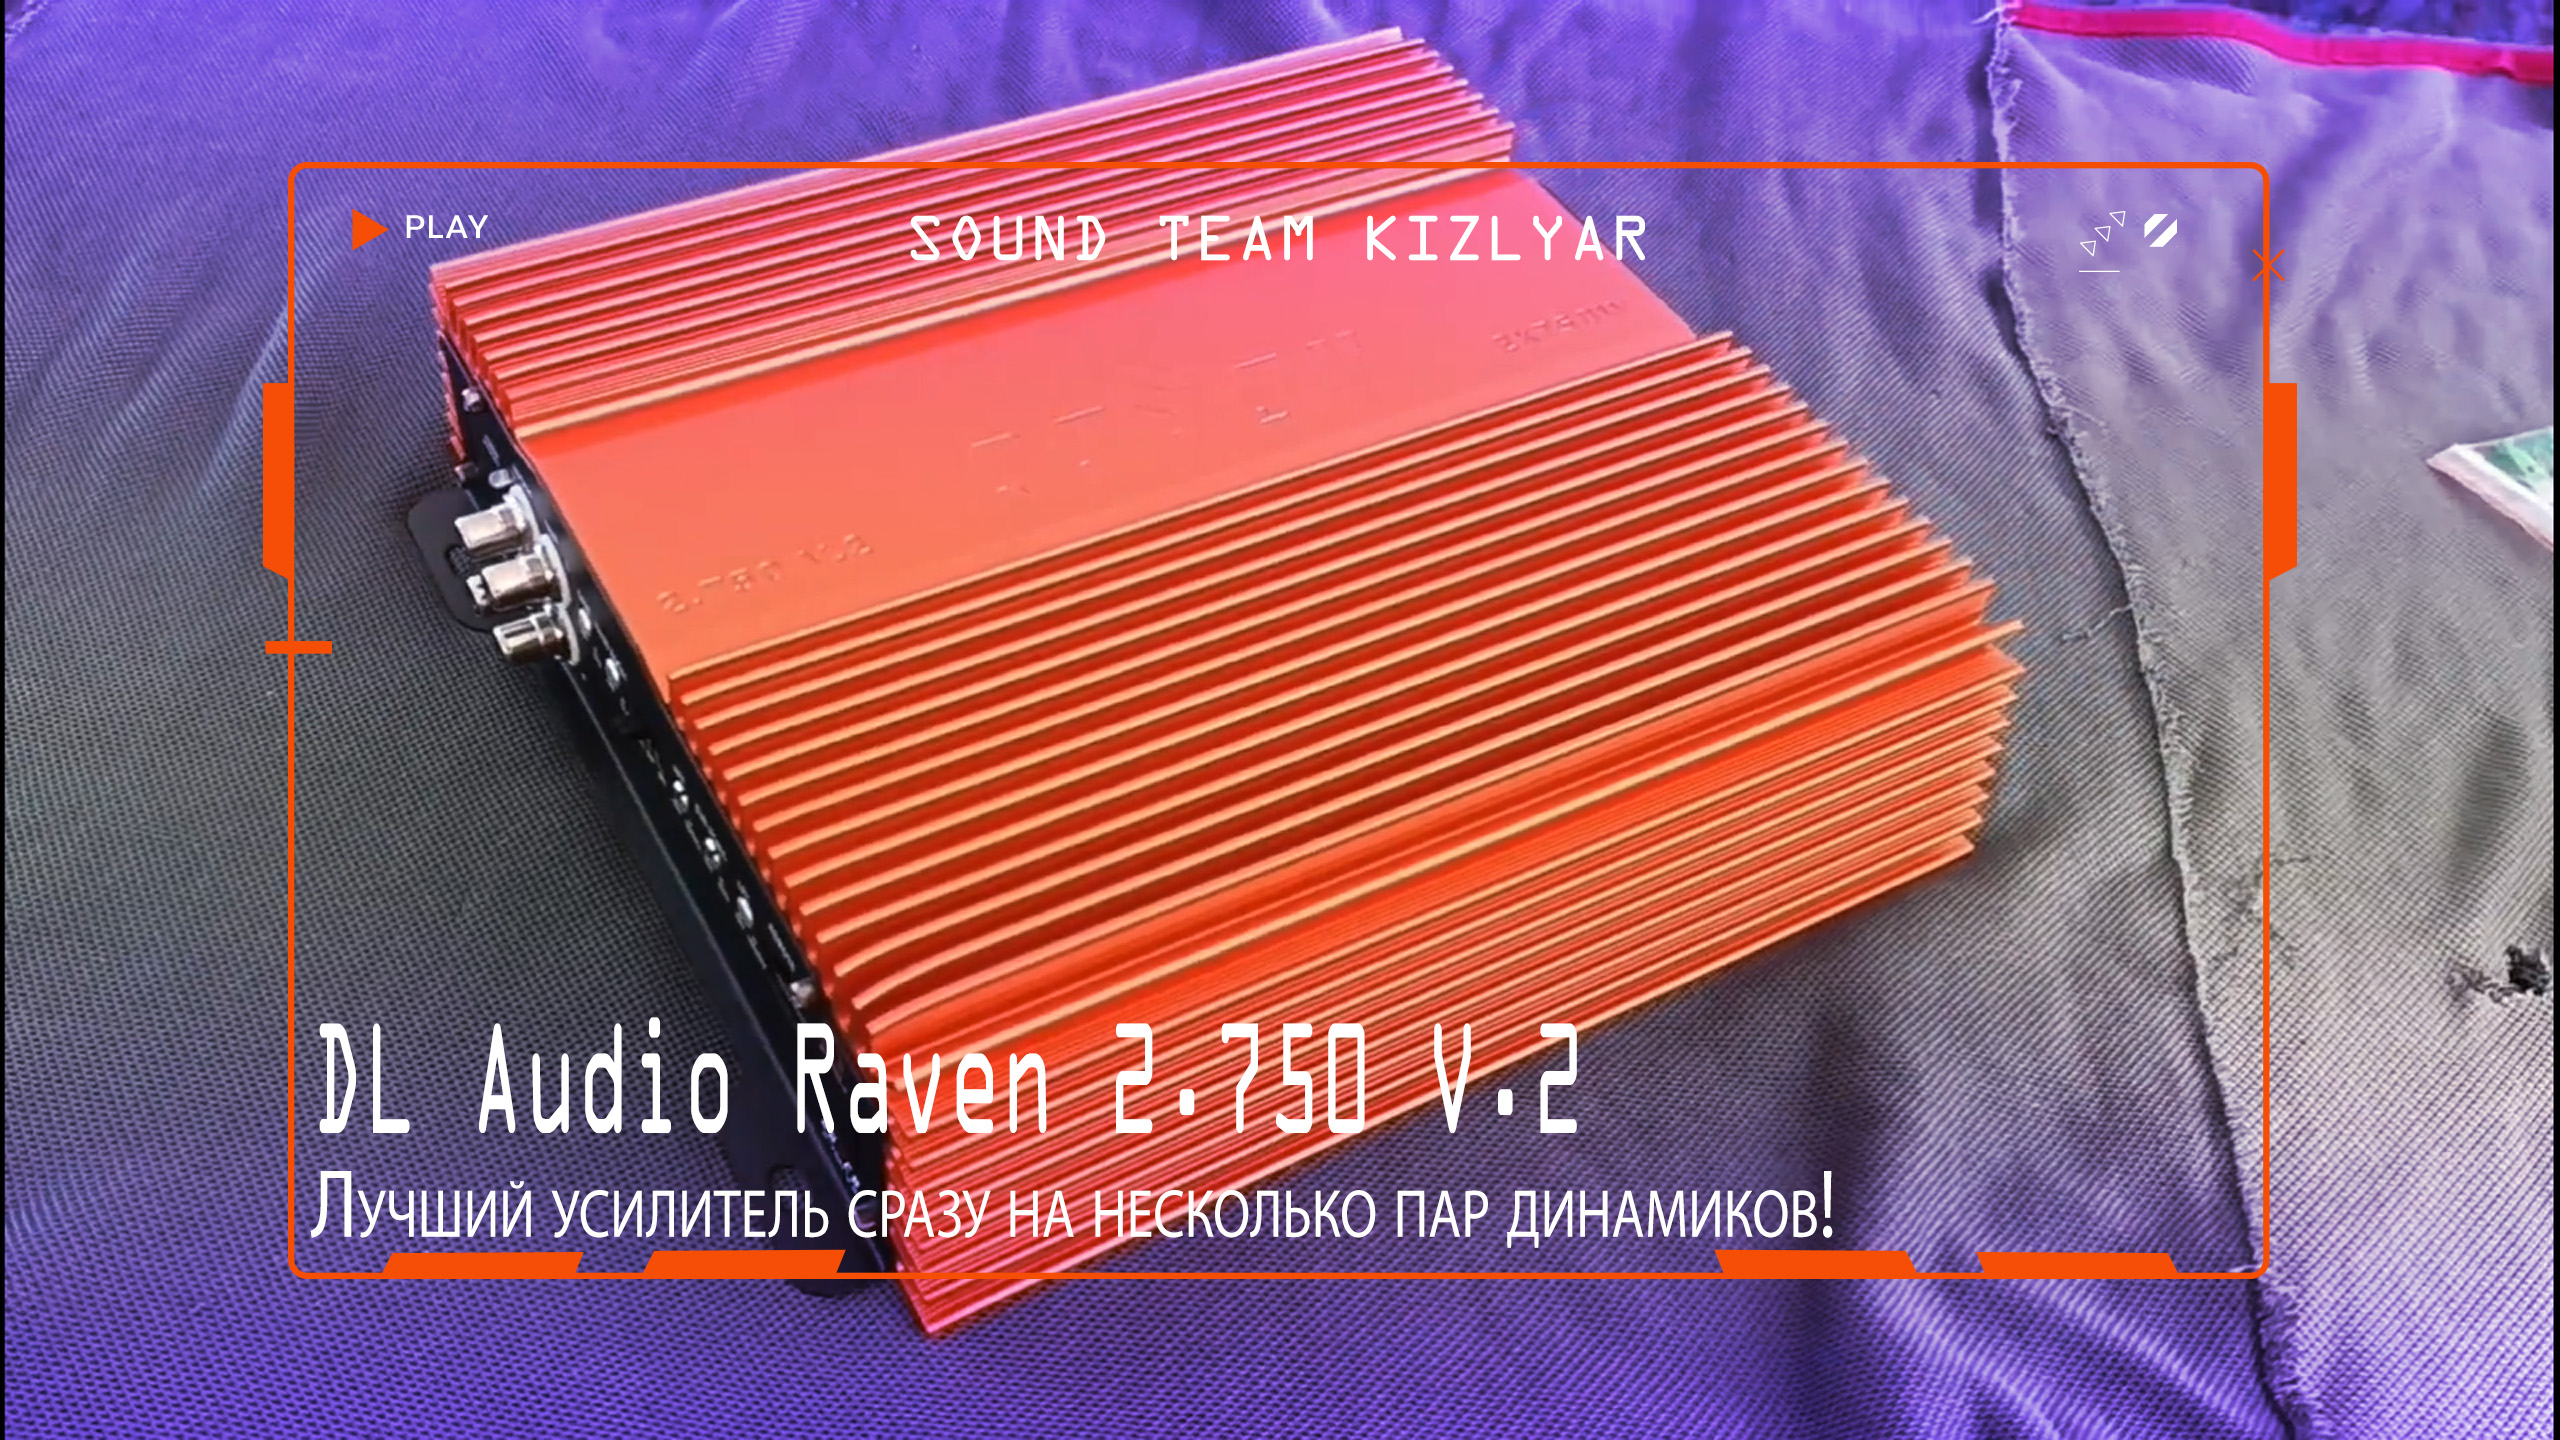 Лучший усилитель сразу на несколько пар динамиков! DL Audio Raven 2.750 V.2